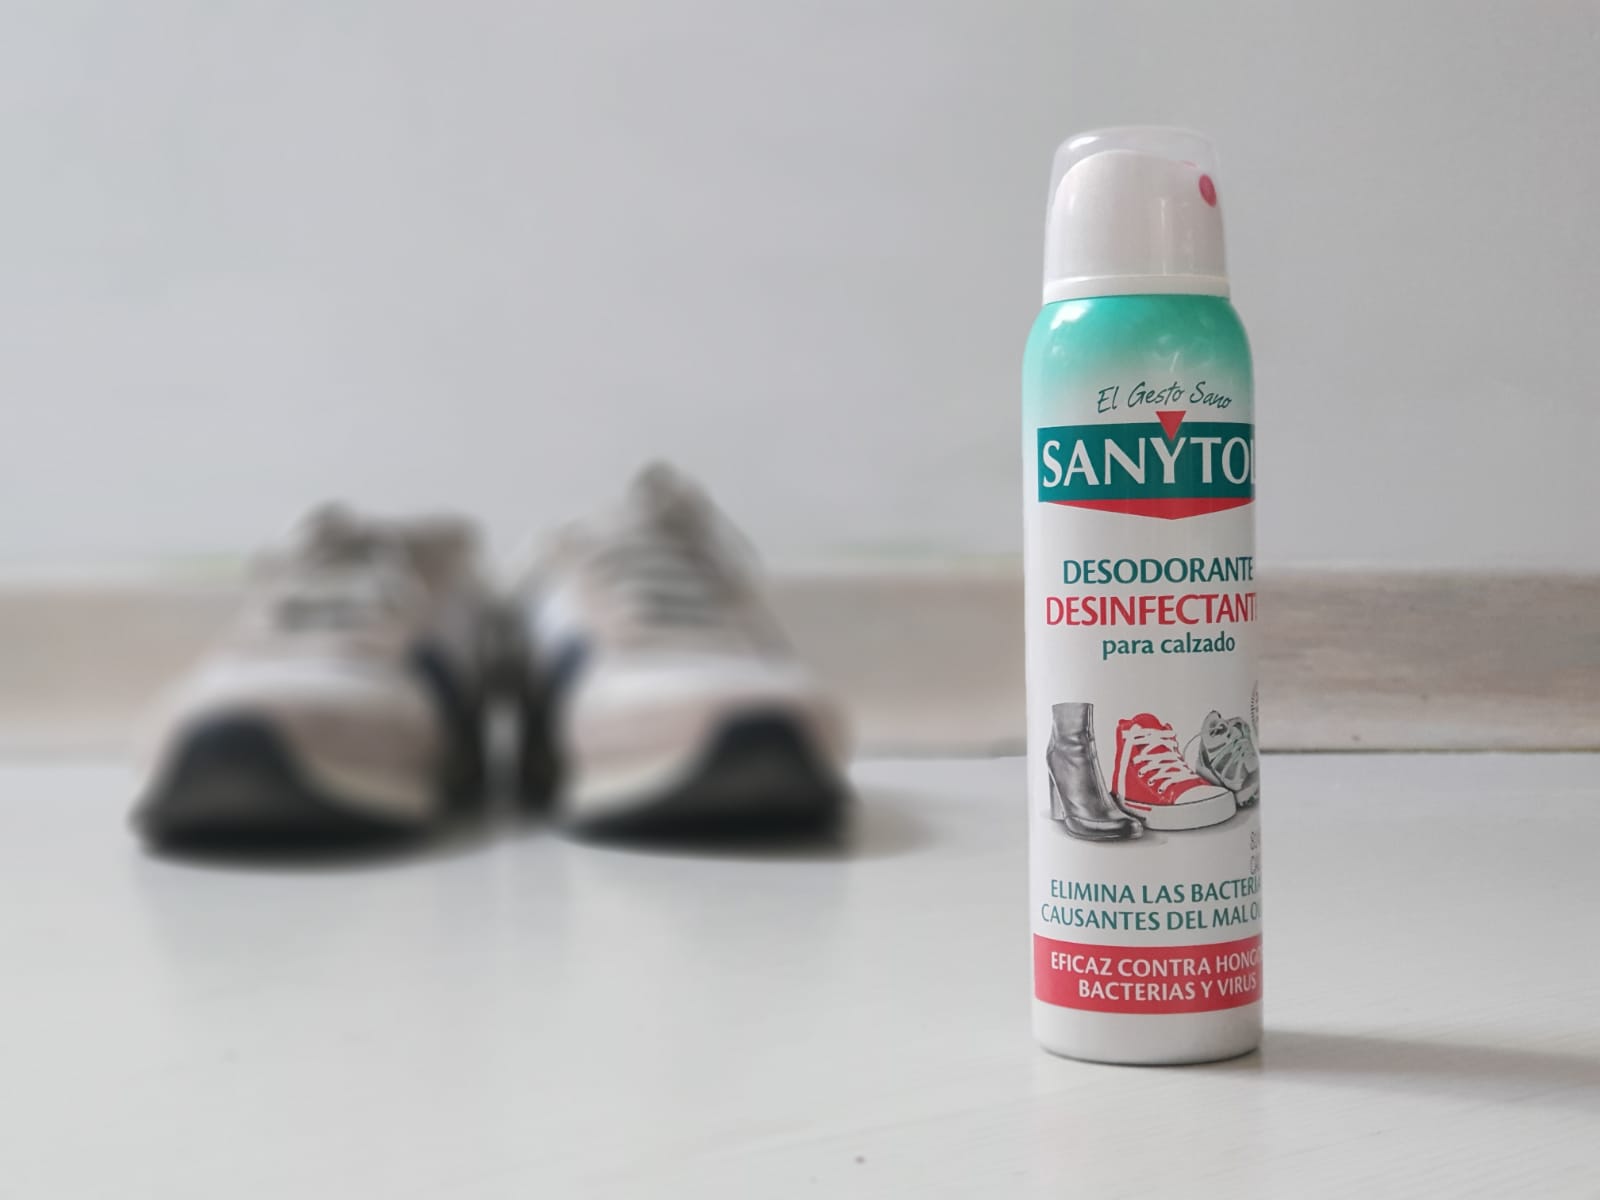 Desinfectante calzado para eliminar el mal olor de pies